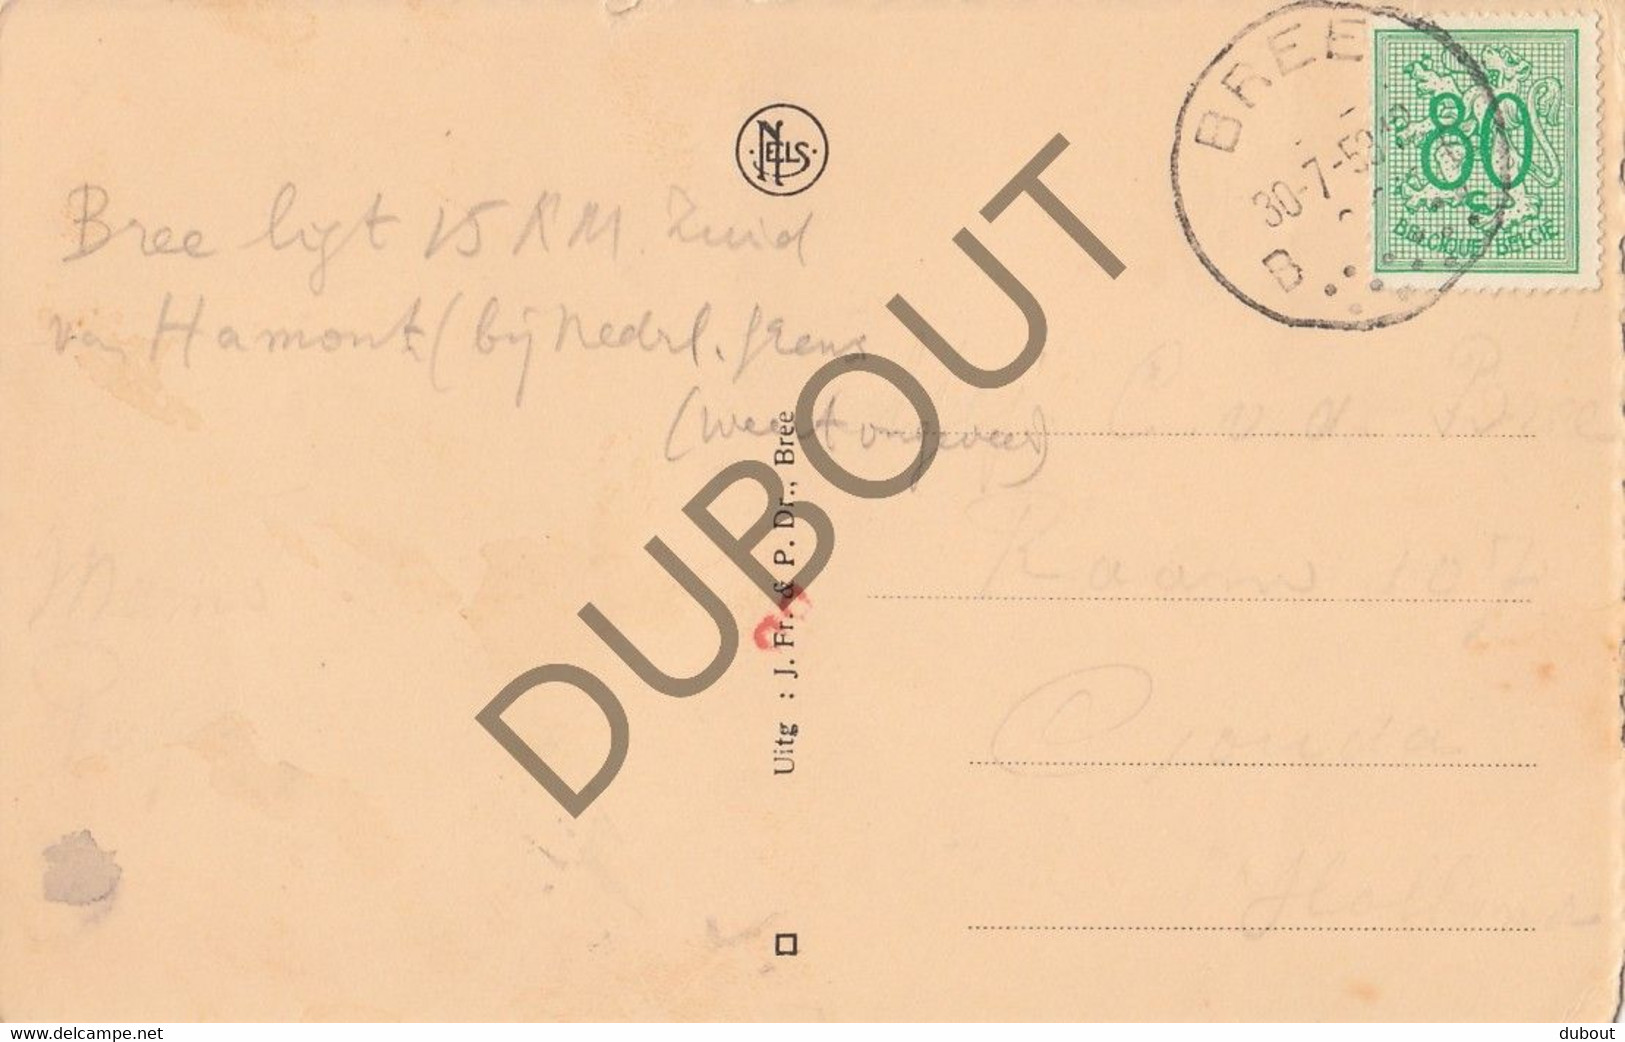 Postkaart/Carte Postale - BREE - Stadhuis En Kerktoren (C1940) - Bree